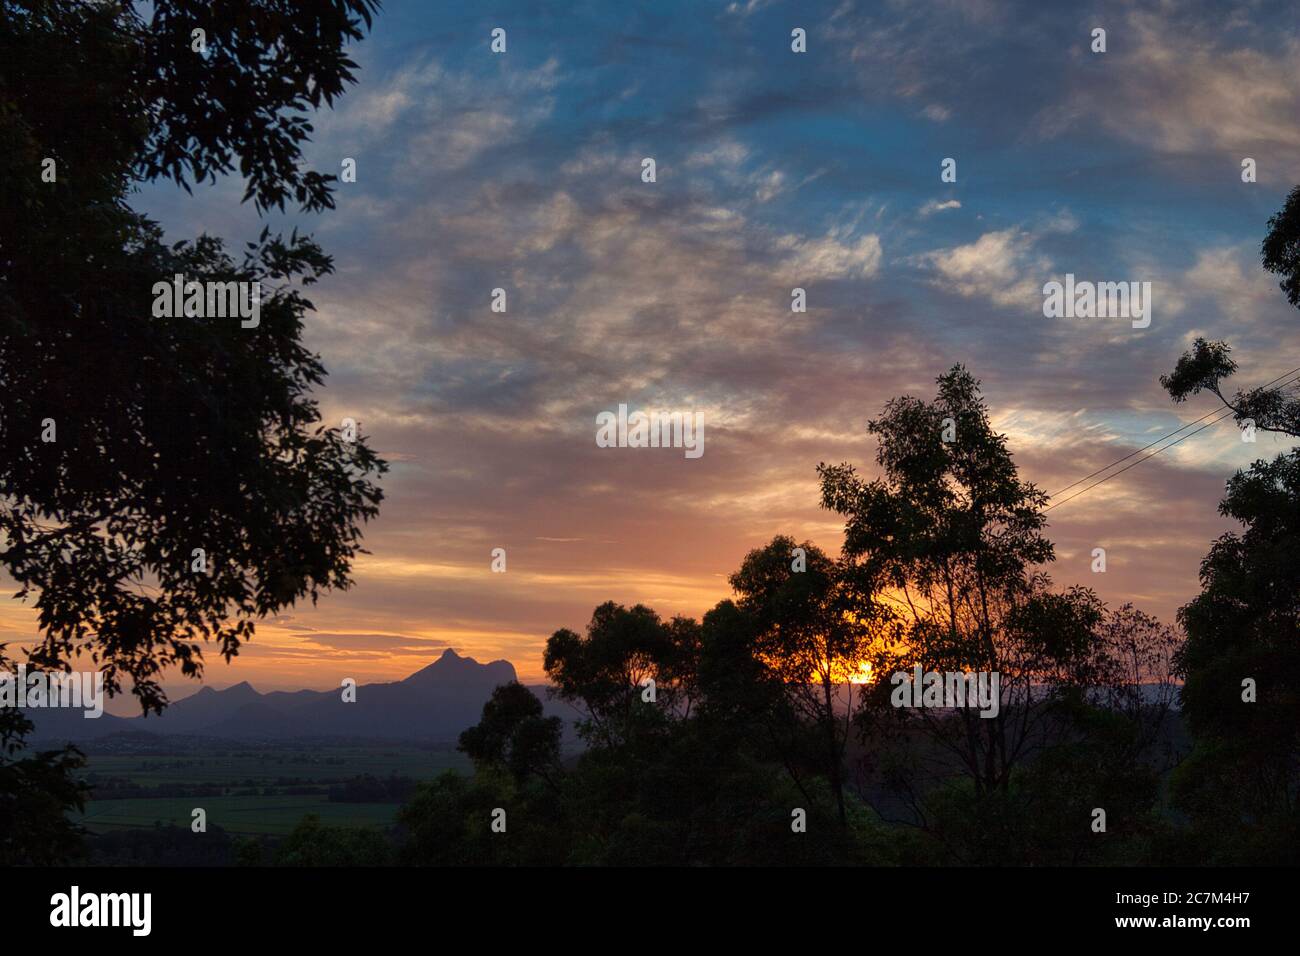 La vetta del Mount Warning prende il nome dal Capitano Cook, silhouette al tramonto sulla costa medio orientale del New South Wales, Australia. Foto Stock